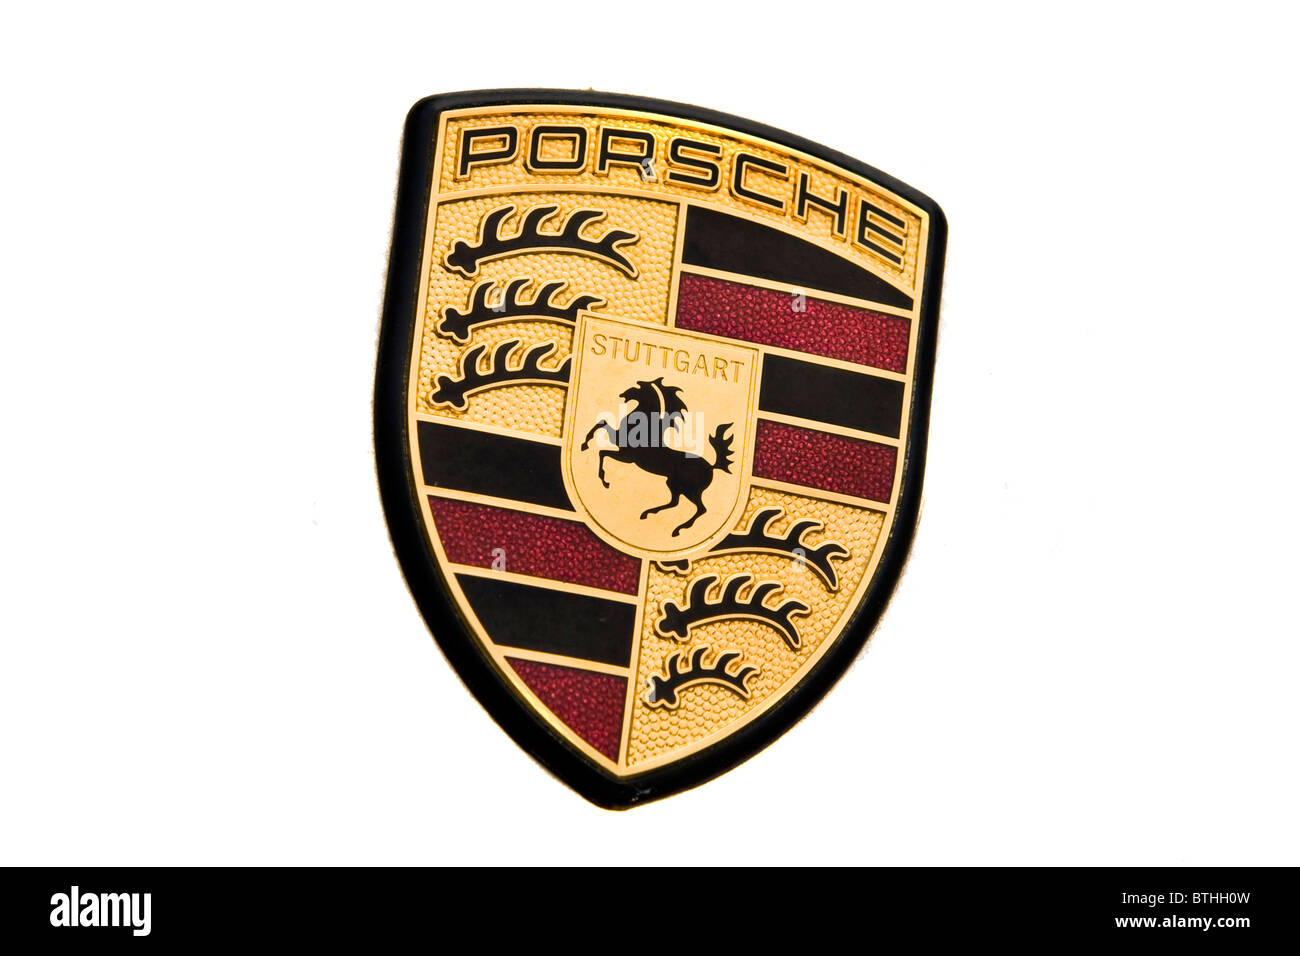 Porsche Stock Photo